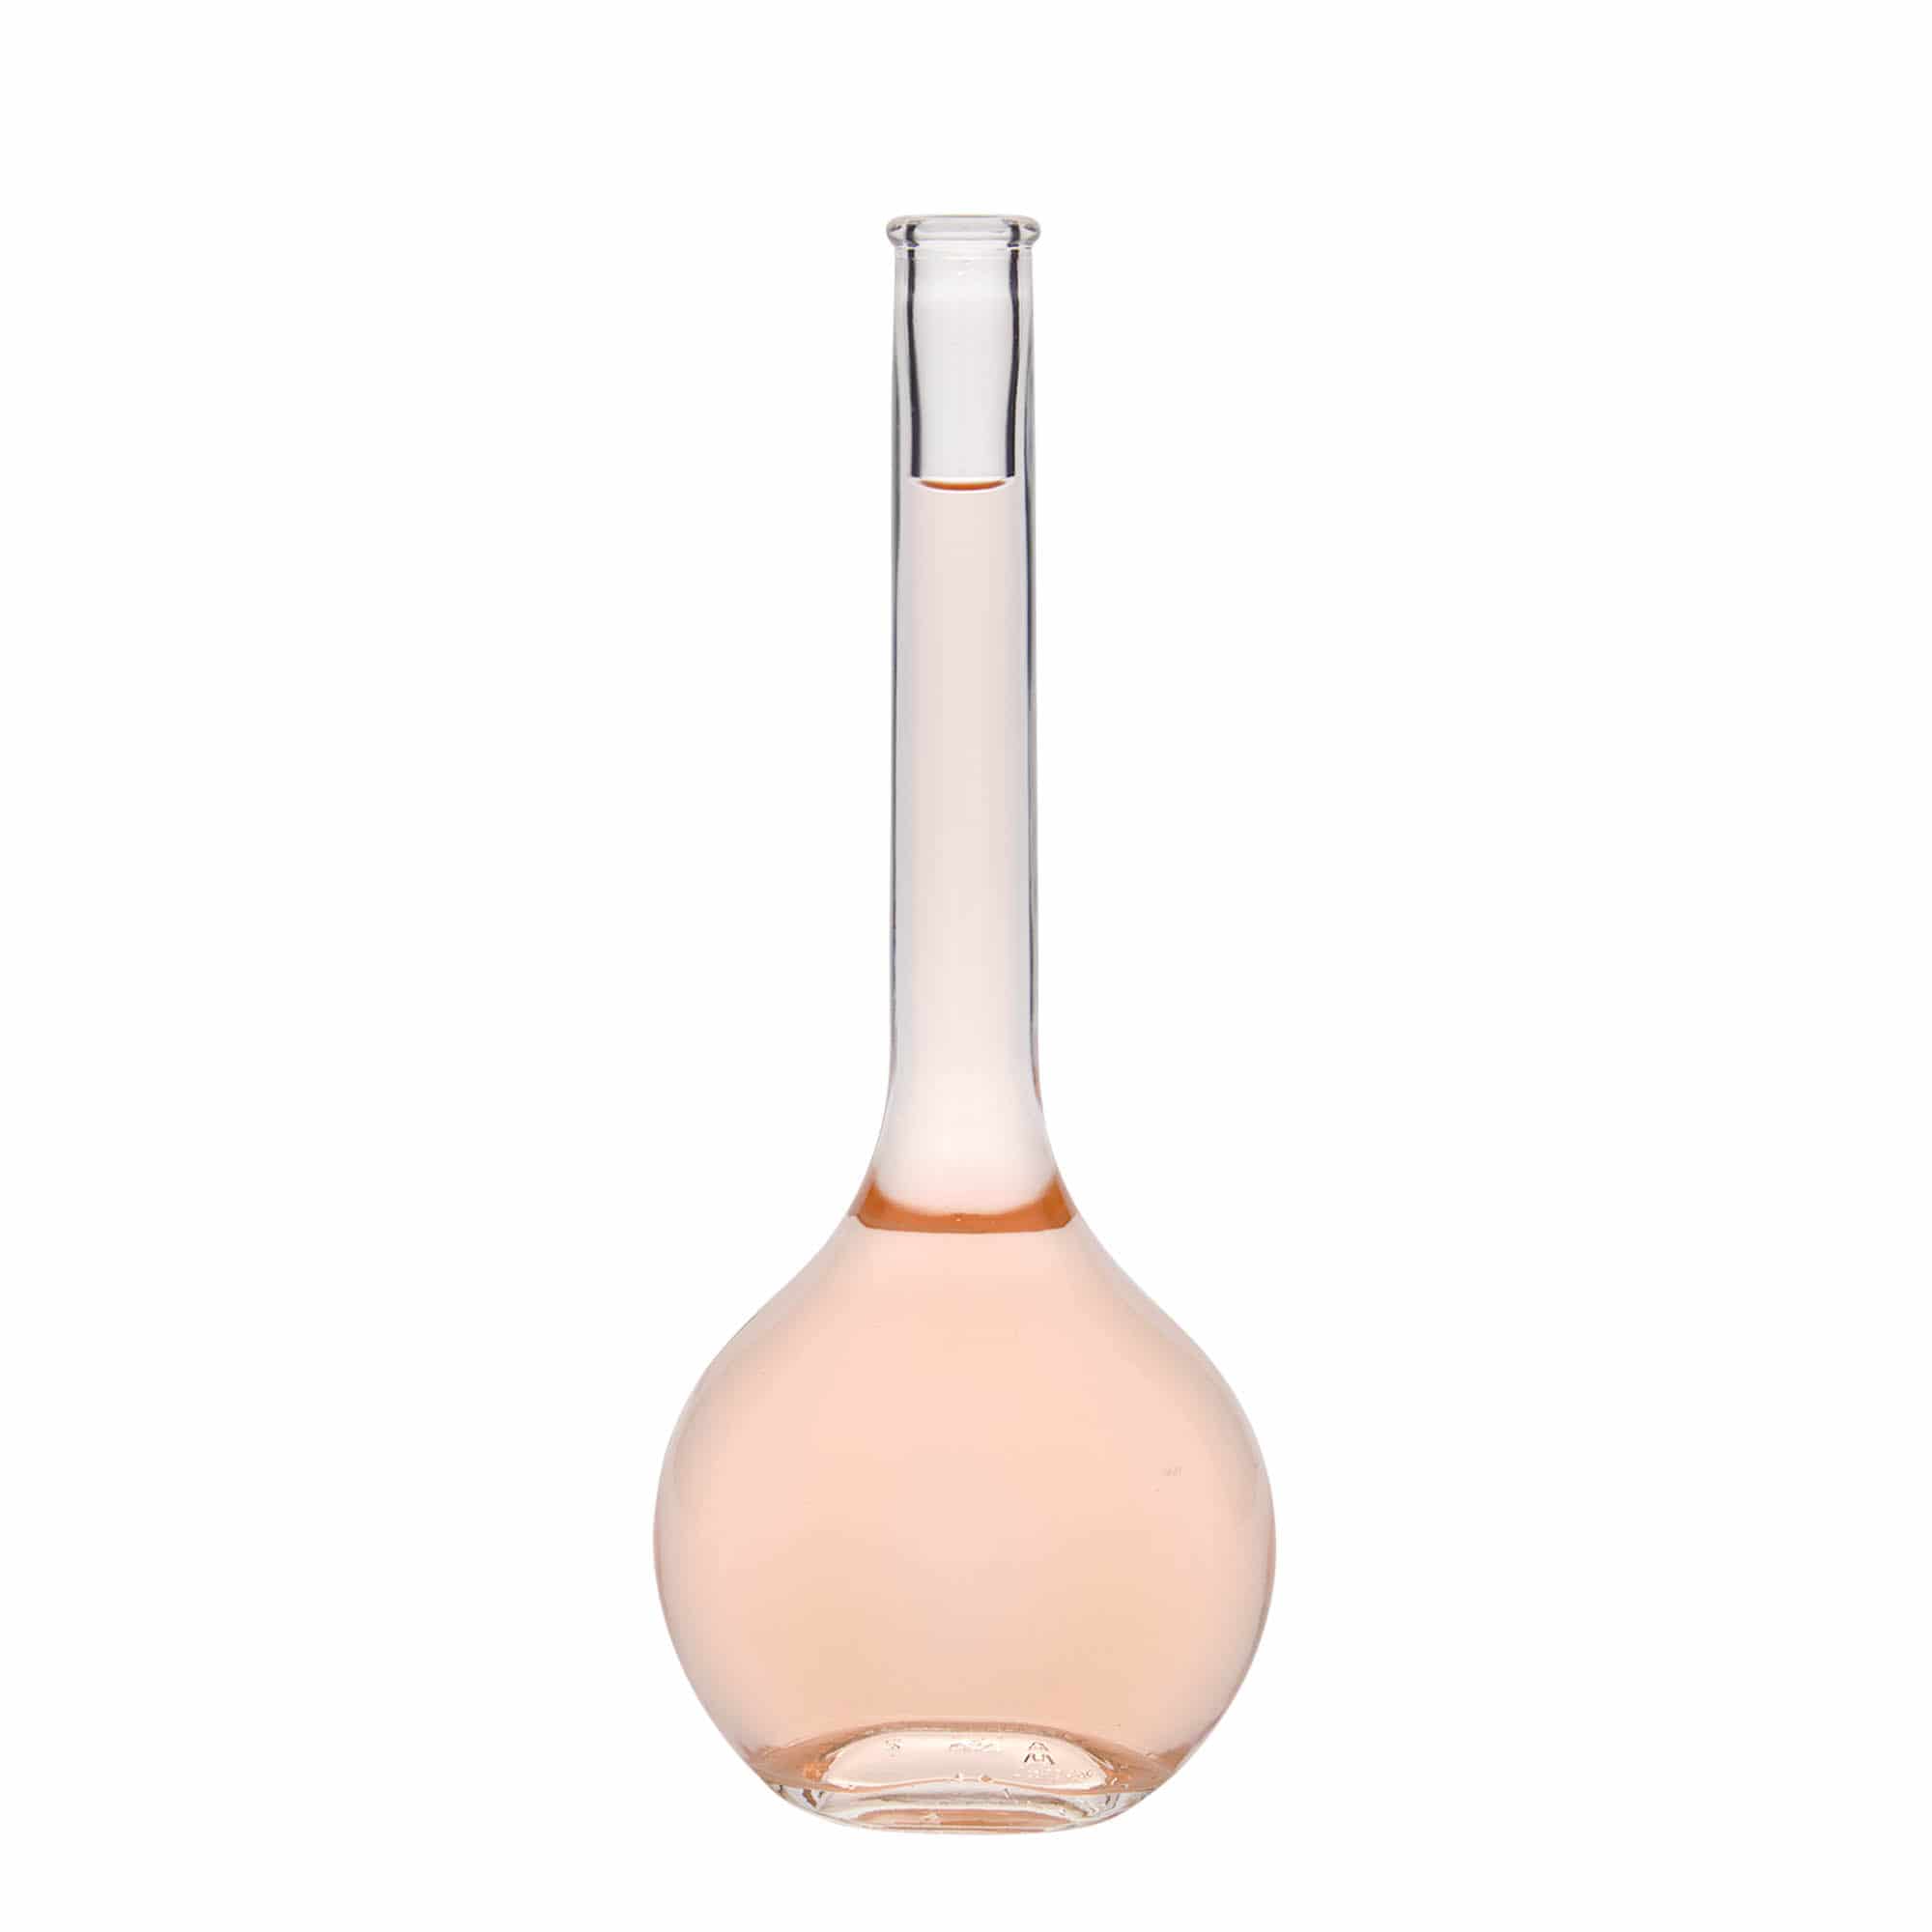 500 ml glass bottle 'Contessa', oval, closure: cork